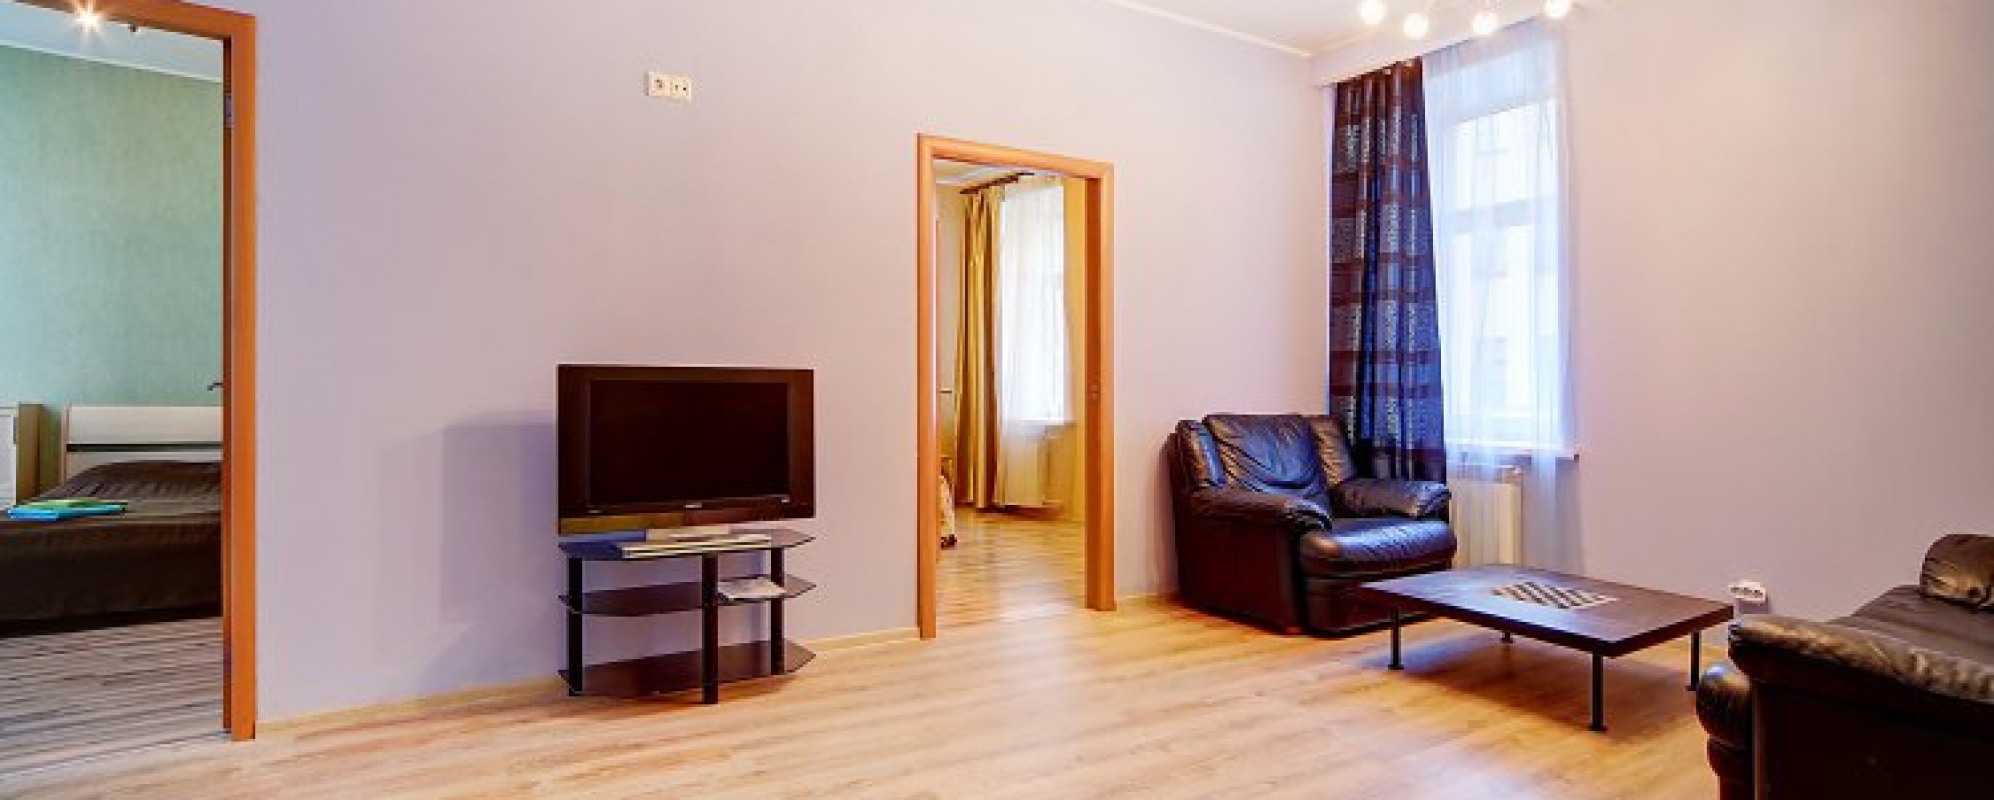 Фотографии квартиры Nevsky Apartment